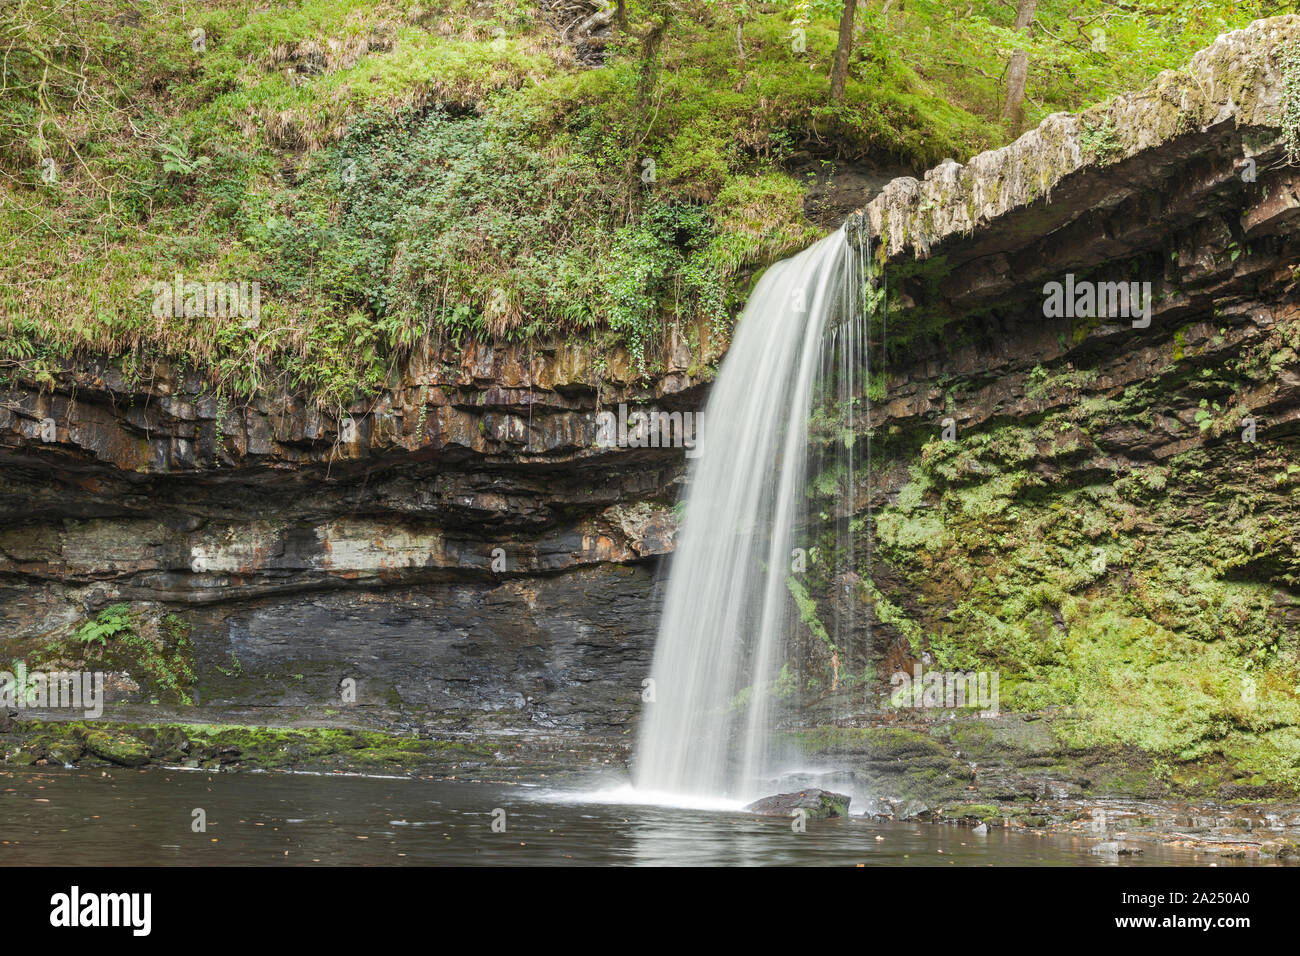 Sgwd Gwladus (Lady Falls) Pyrddin sur River, près de Pontneddfechan, parc national de Brecon Beacons, dans le sud du Pays de Galles, Royaume-Uni Banque D'Images